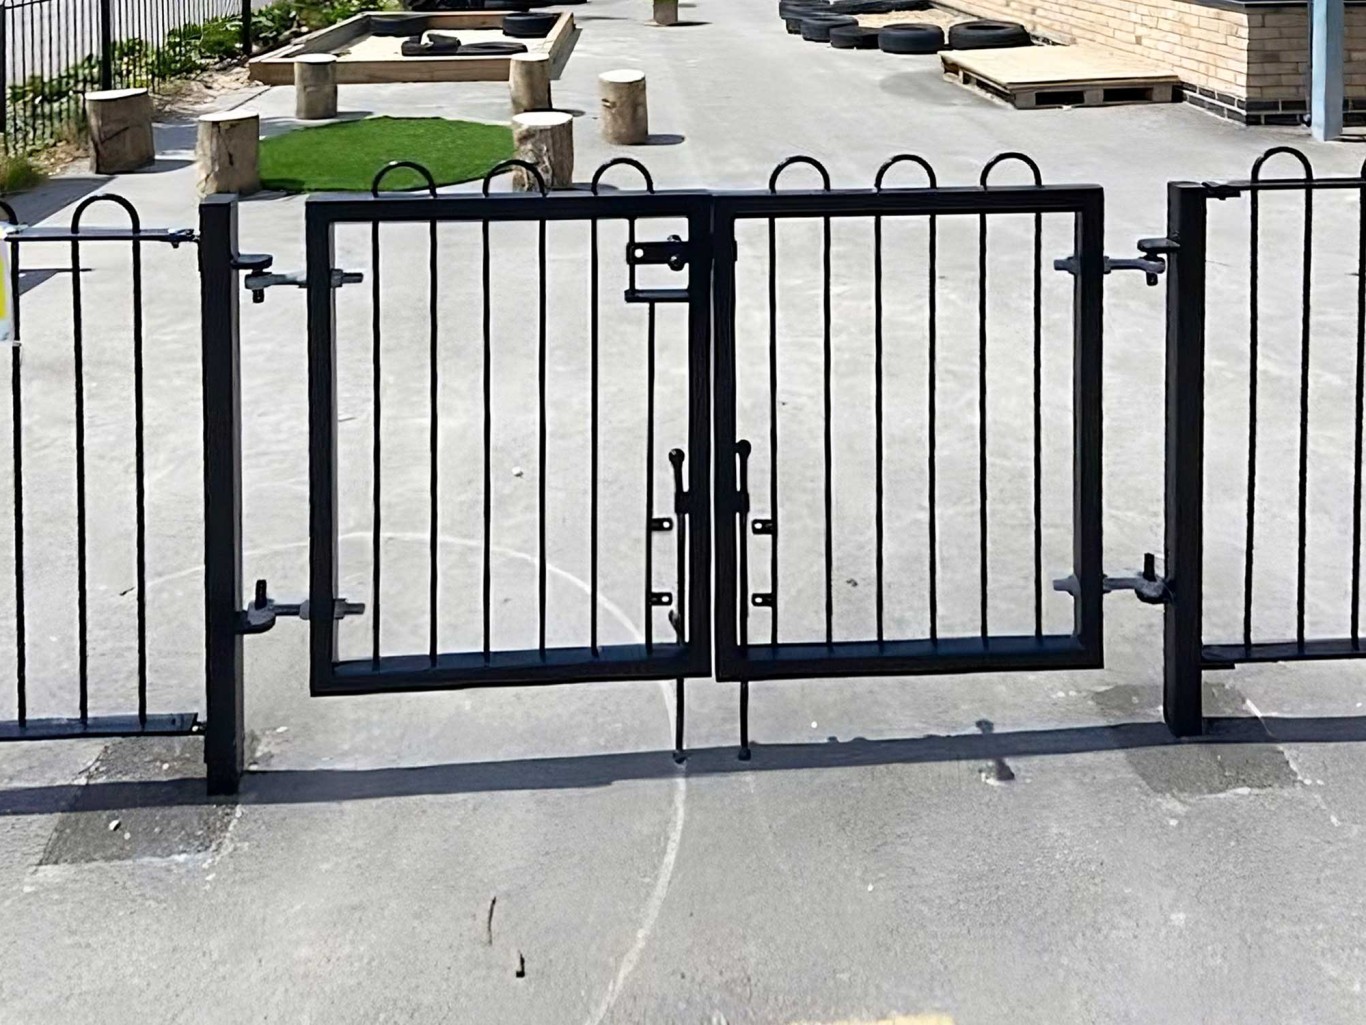 Black iron gates surrounding a school playground area.